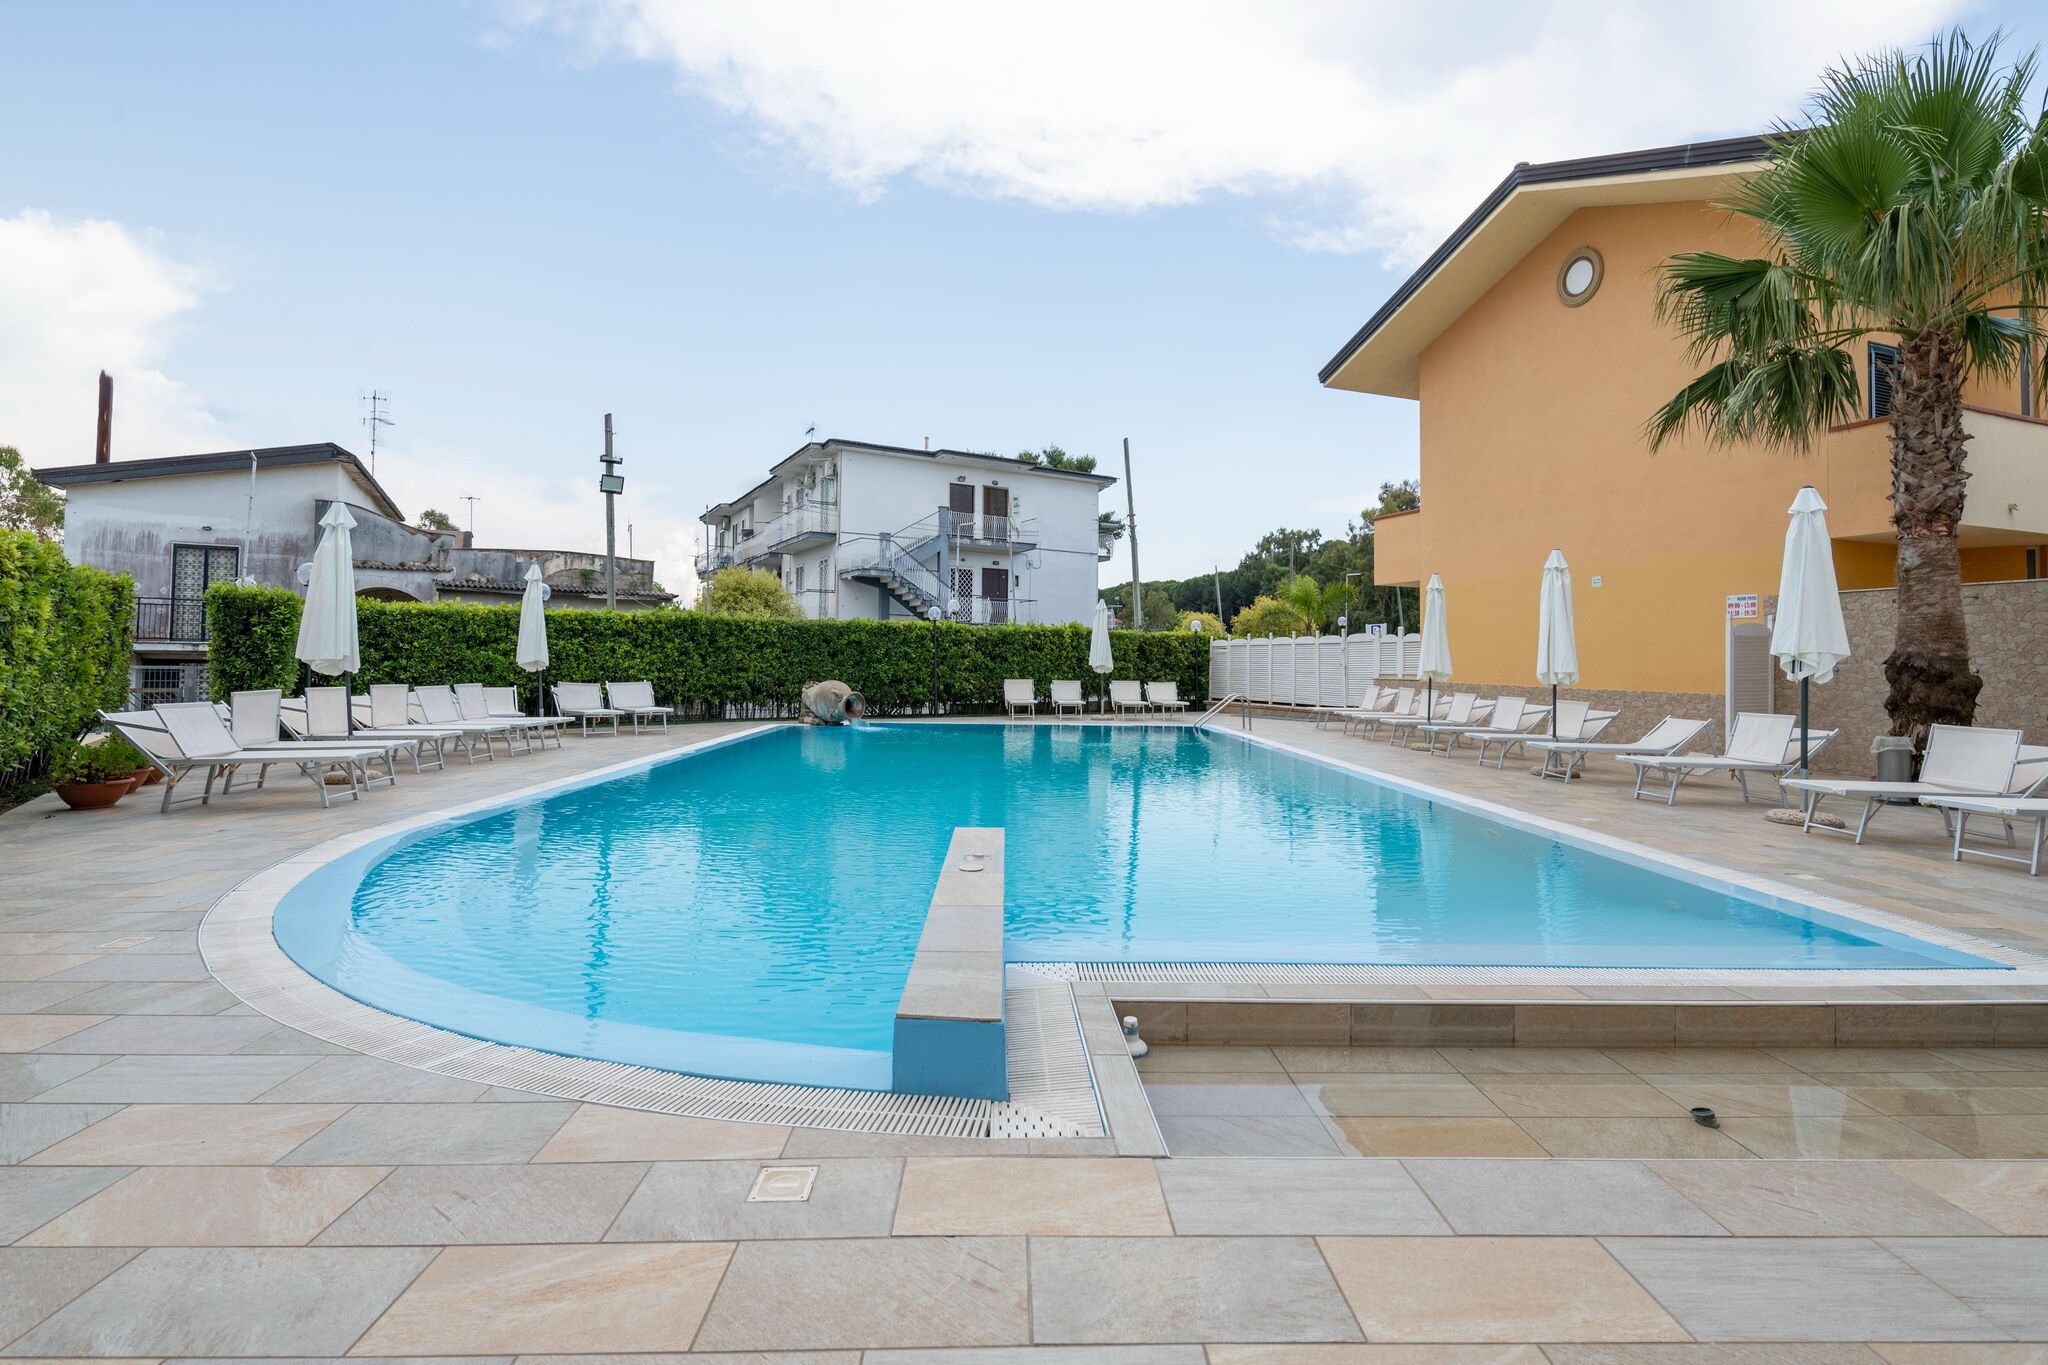 Appartement pour 4 personnes dans Résidence avec piscine à 100 mètres de la mer